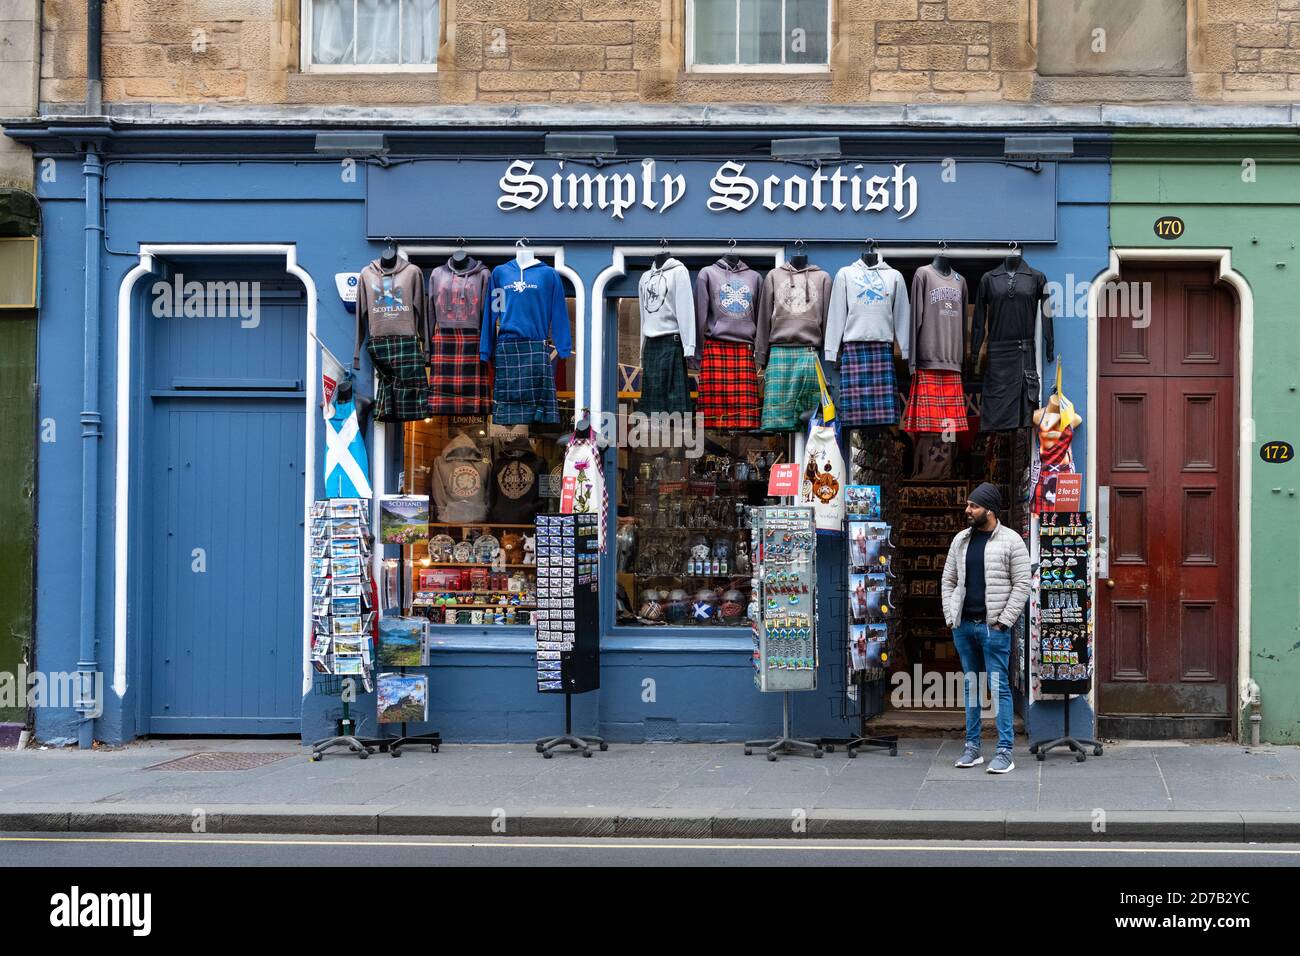 Boutique de souvenirs écossais tout simplement écossais sur un Royal très calme Mile Edinburgh Ecosse pendant la pandémie du coronavirus 2020 Banque D'Images